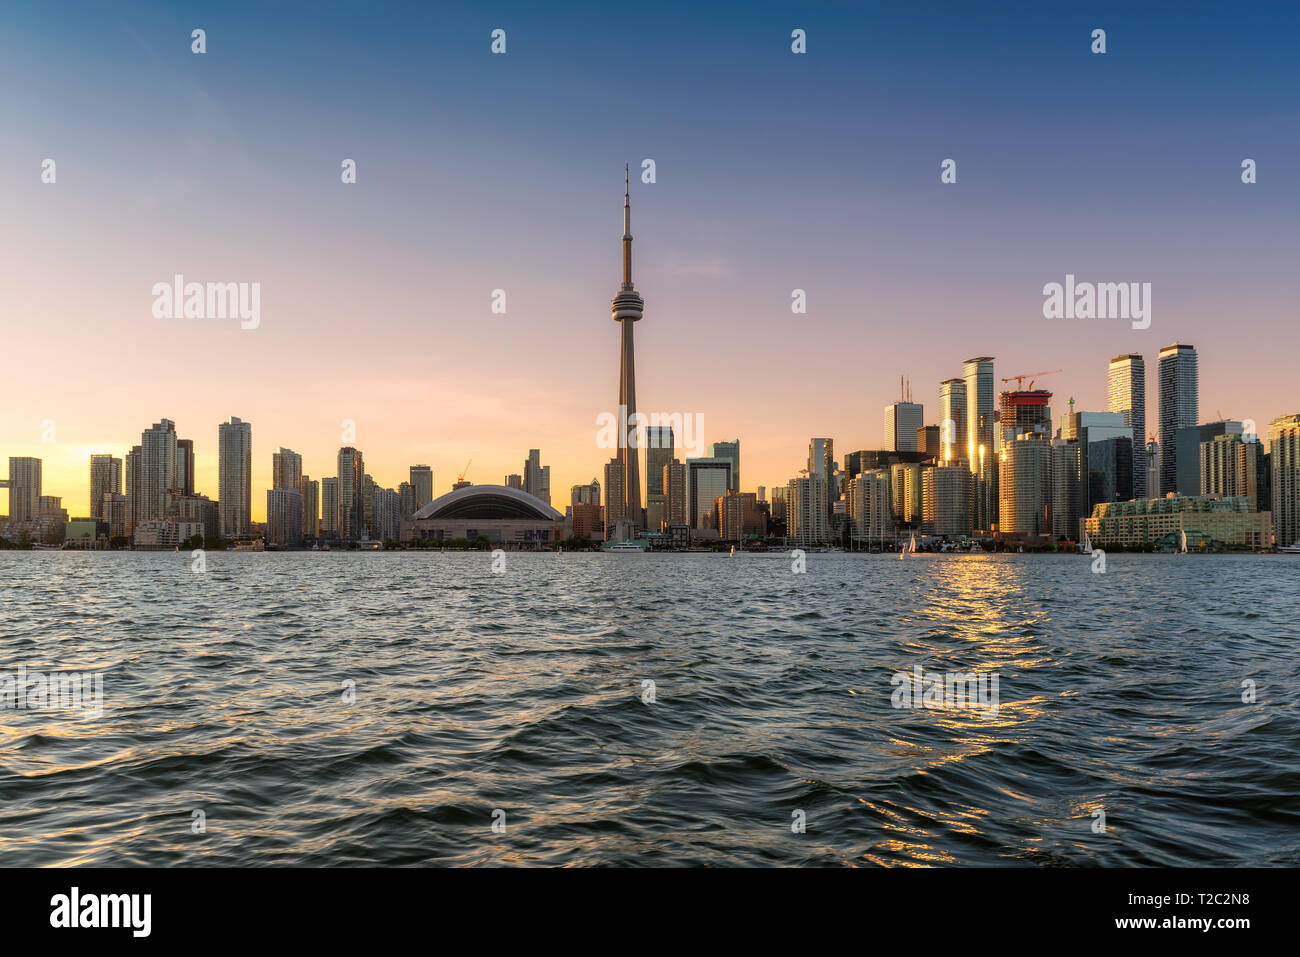 Beautiful Toronto city skyline at sunset  - Toronto, Ontario, Canada. Stock Photo